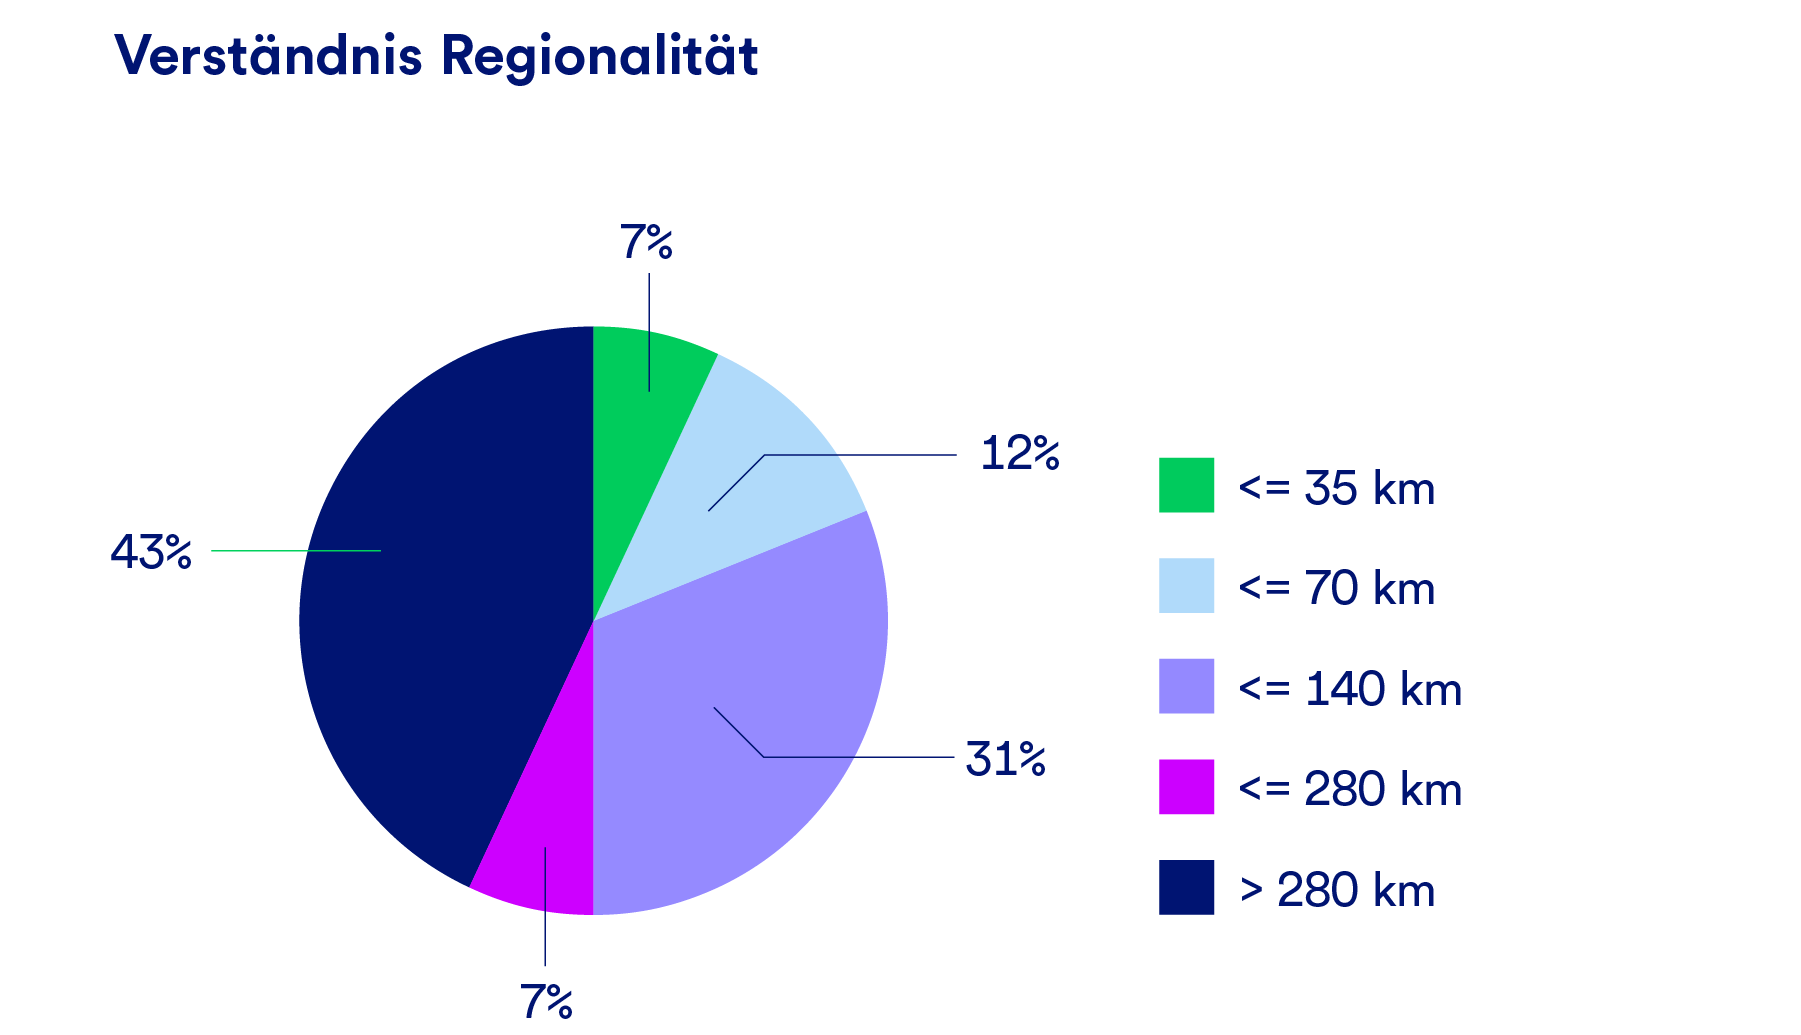 Eine Grafik, die das Verständnis von Regionalität der nachhaltigen Unternehmen in Kilometern angibt.